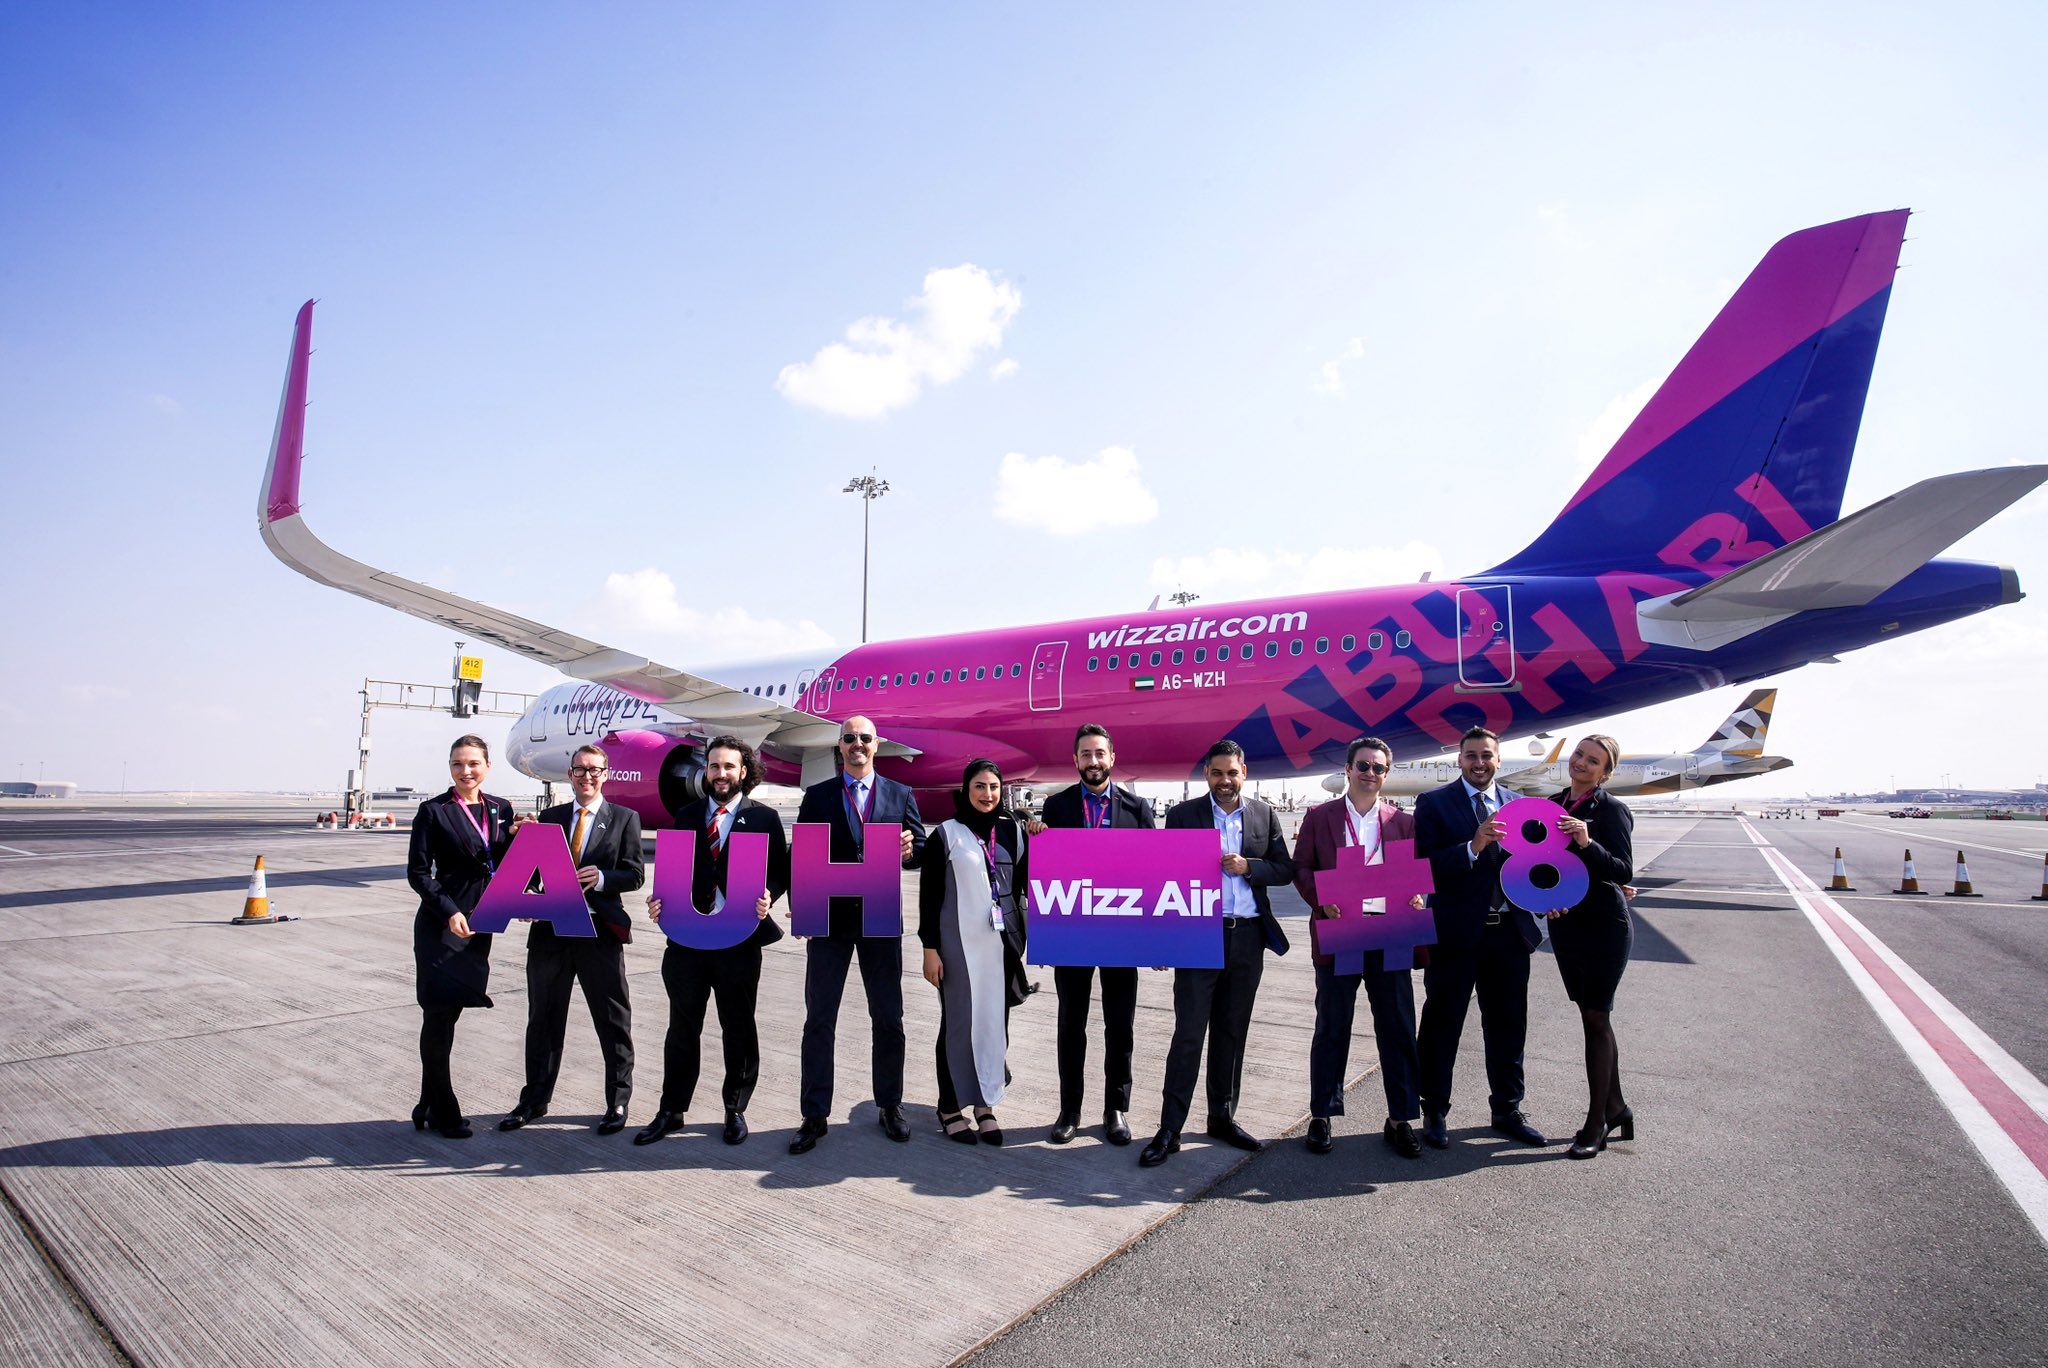 Wizz Air Abu Dhabi's eighth Airbus A321neo